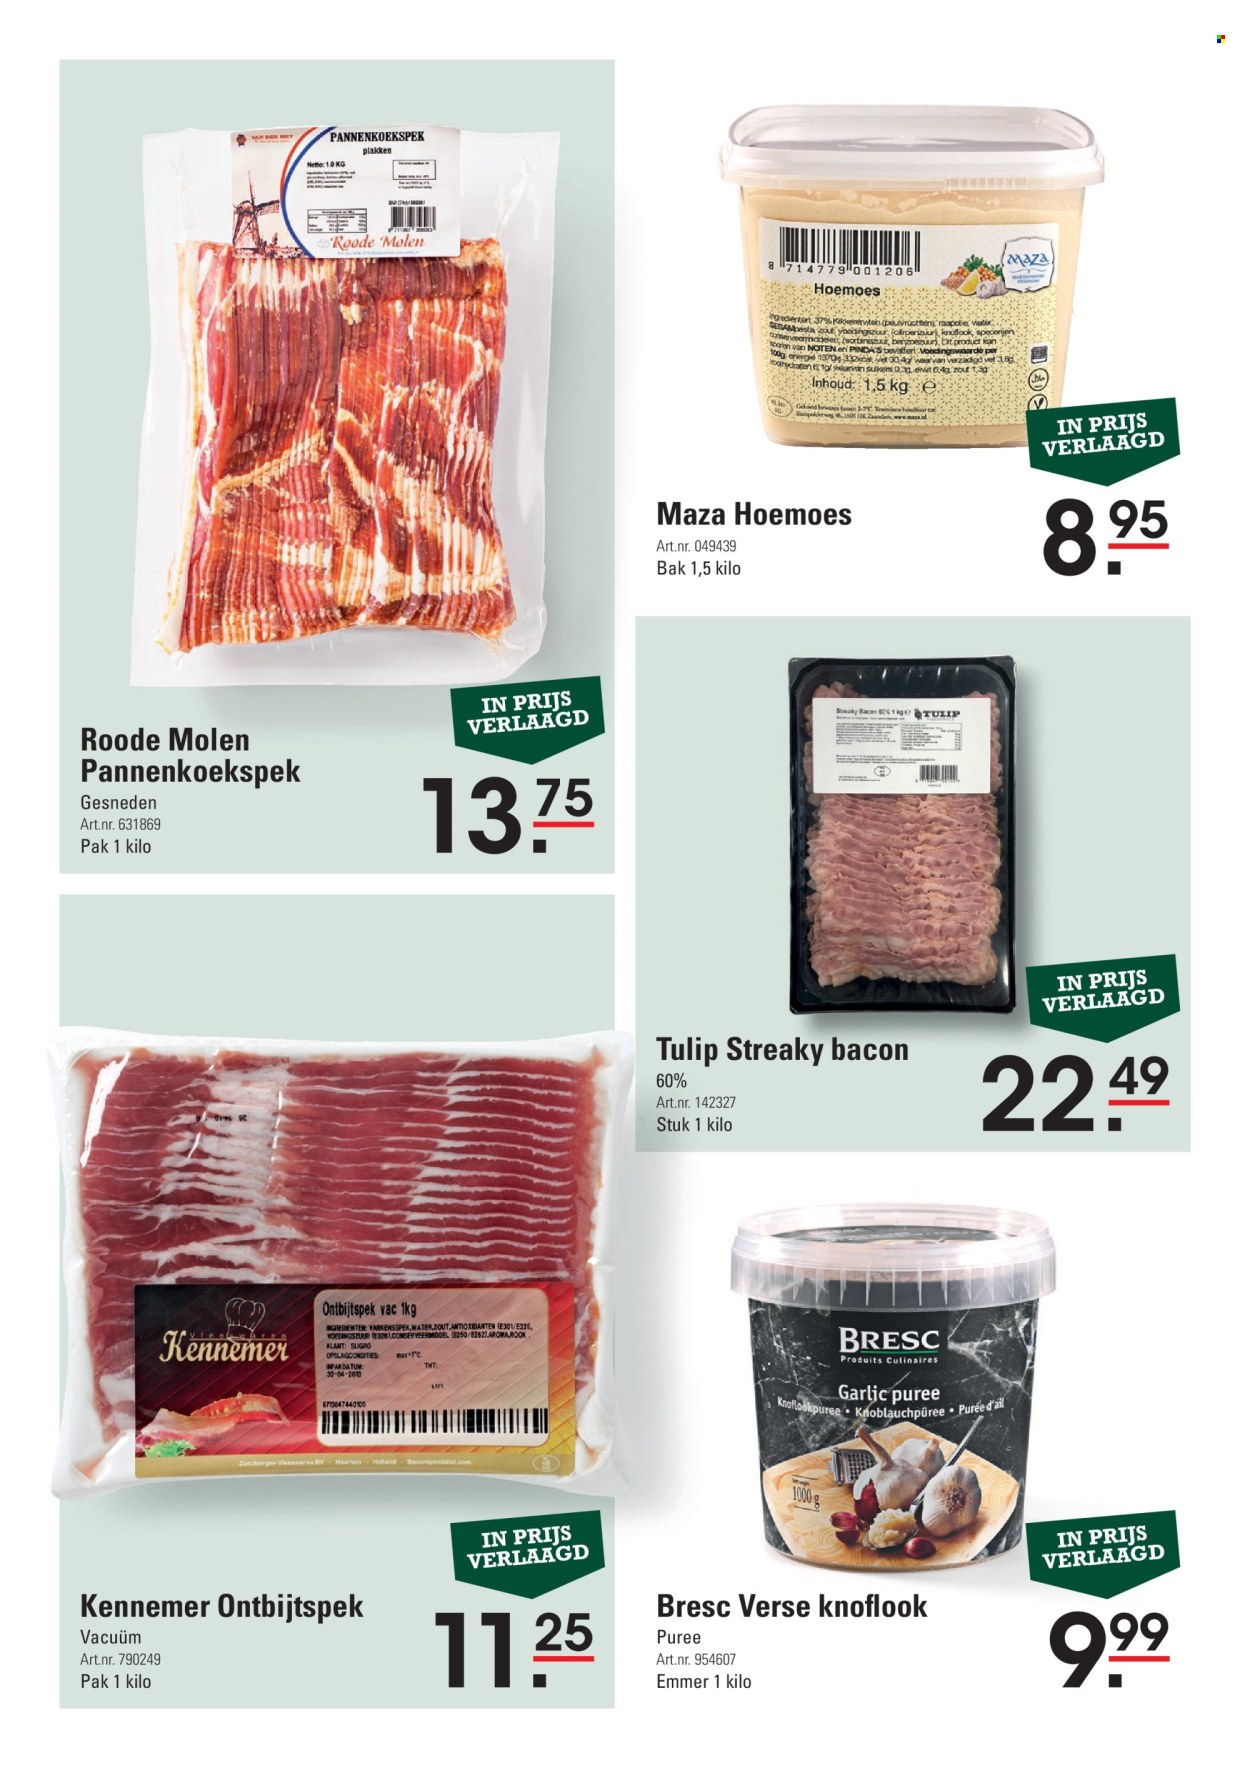 thumbnail - Sligro-aanbieding -  producten in de aanbieding - knoflook, bacon, ontbijtspek, hummus, pinda's, peulvruchten. Pagina 13.